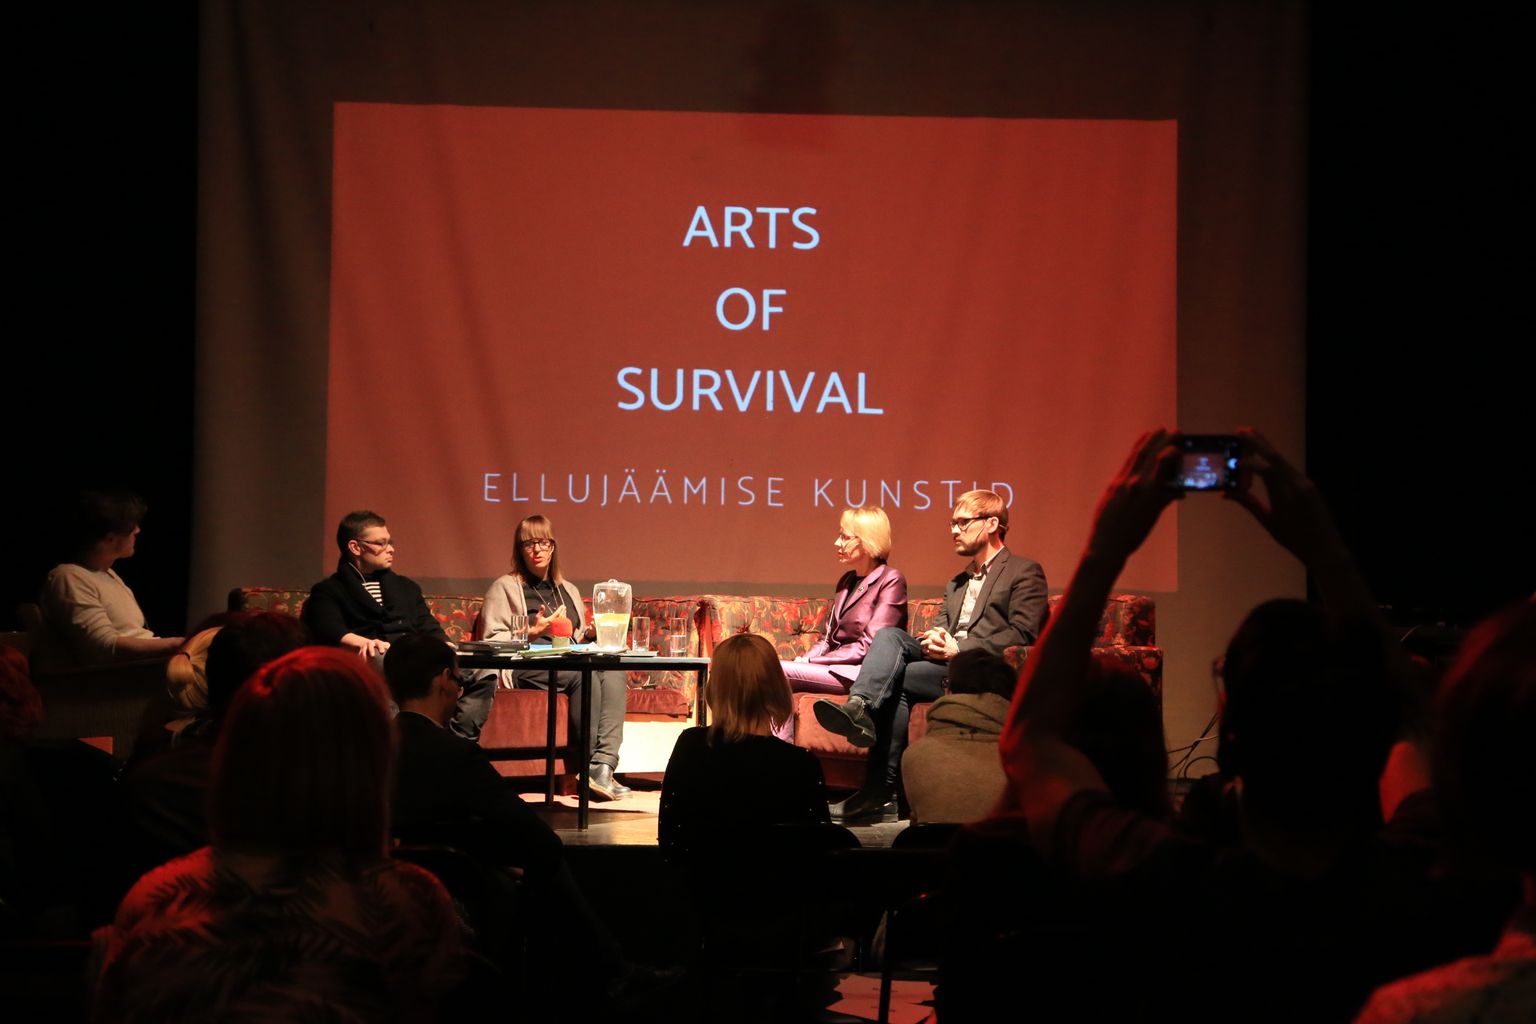 Rahva ees olid Märt Põder (vasakult), Berk Vaher, Karin Bachmann, Anneli Saro ja Rannar Raba, kes esitasid arvamusi kultuuripealinna taotlusraamatu pealkirjast.